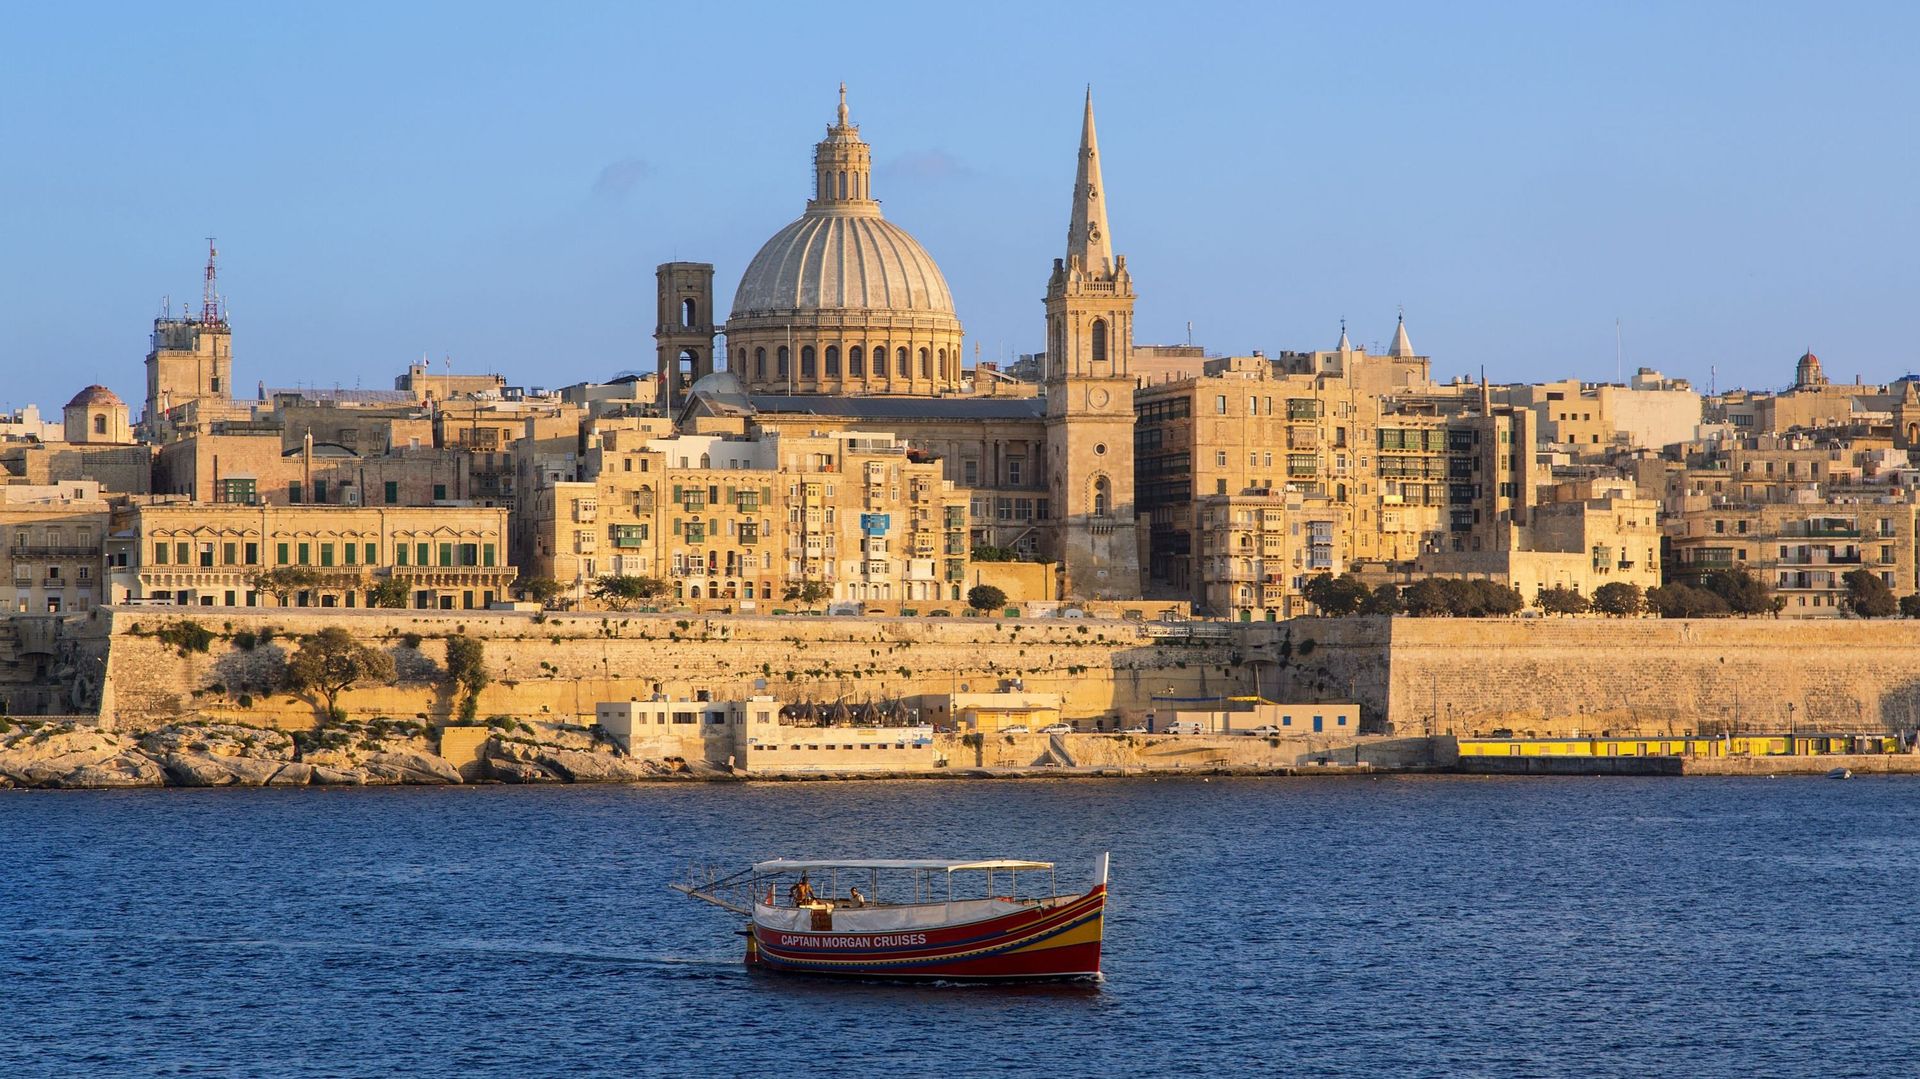 Malta, Valletta at Sunset